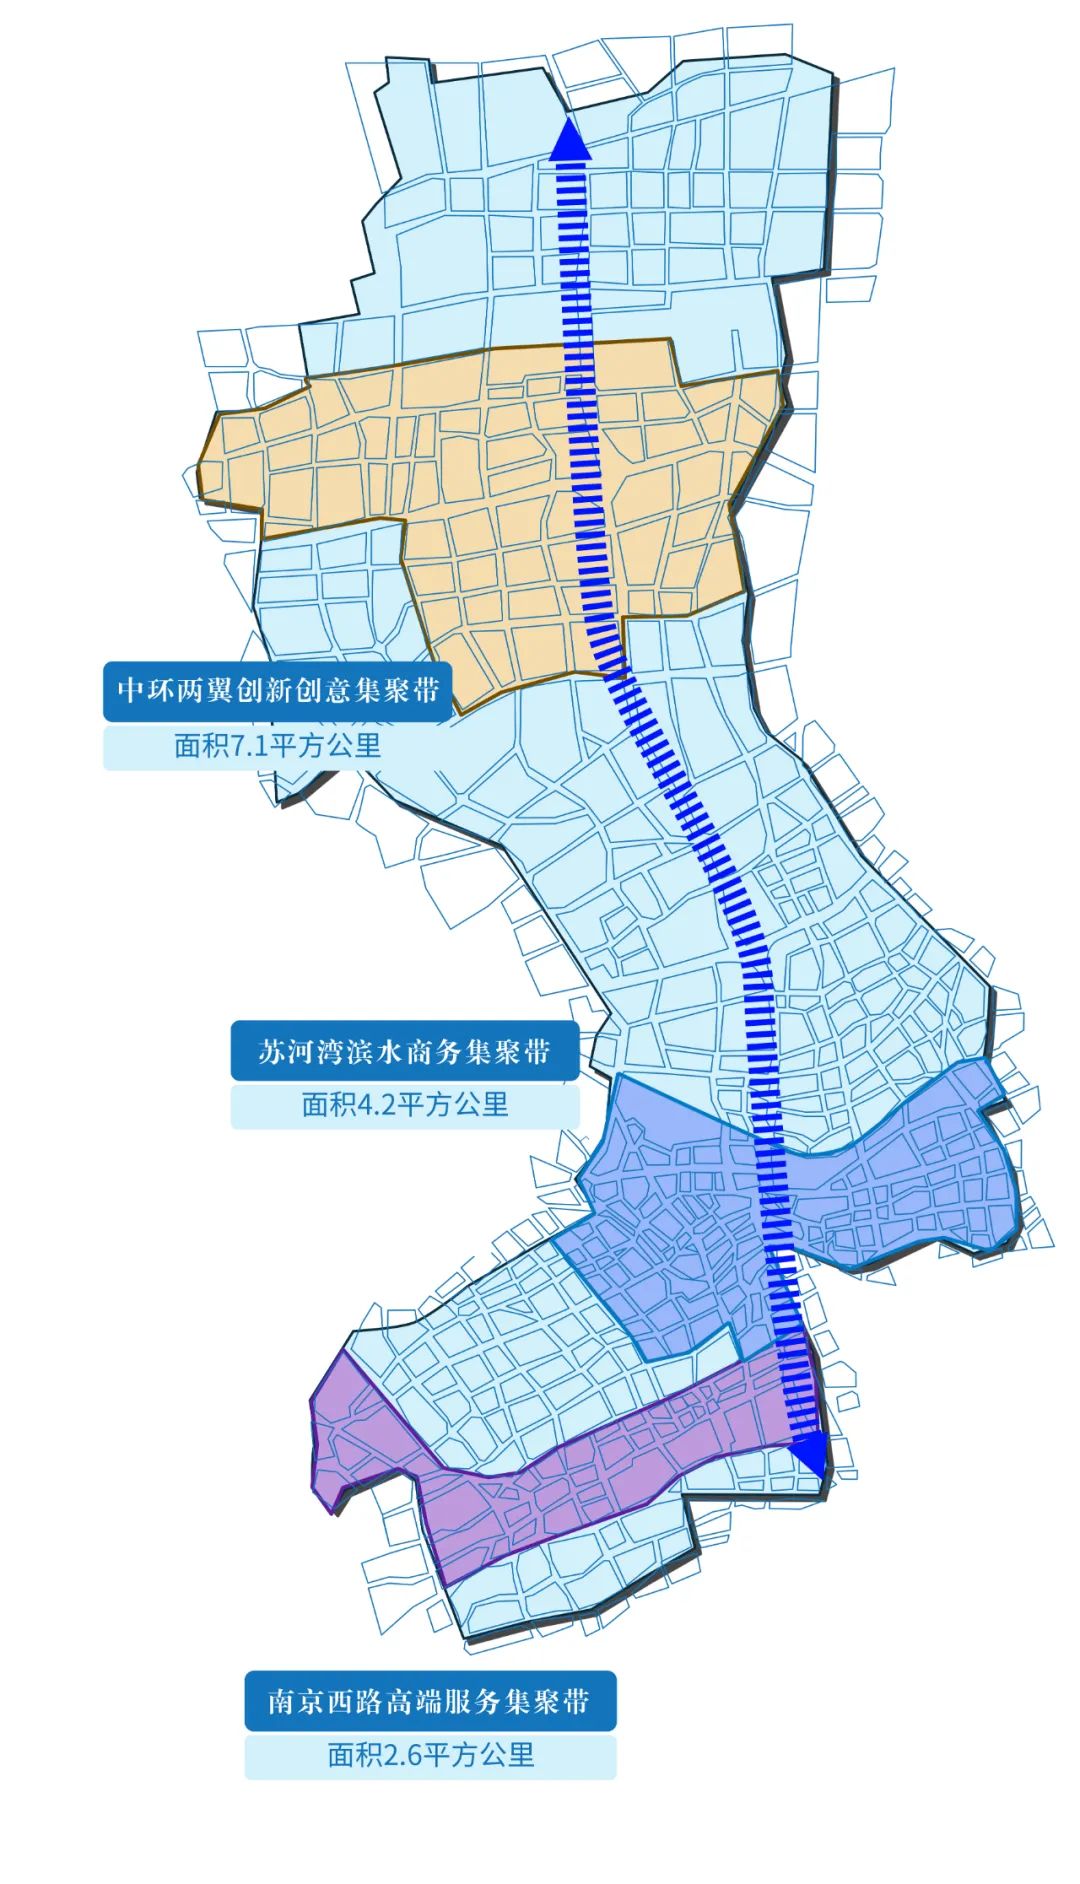 十四五期间,静安将强化南北复合发展轴,南京西路高端服务集聚带